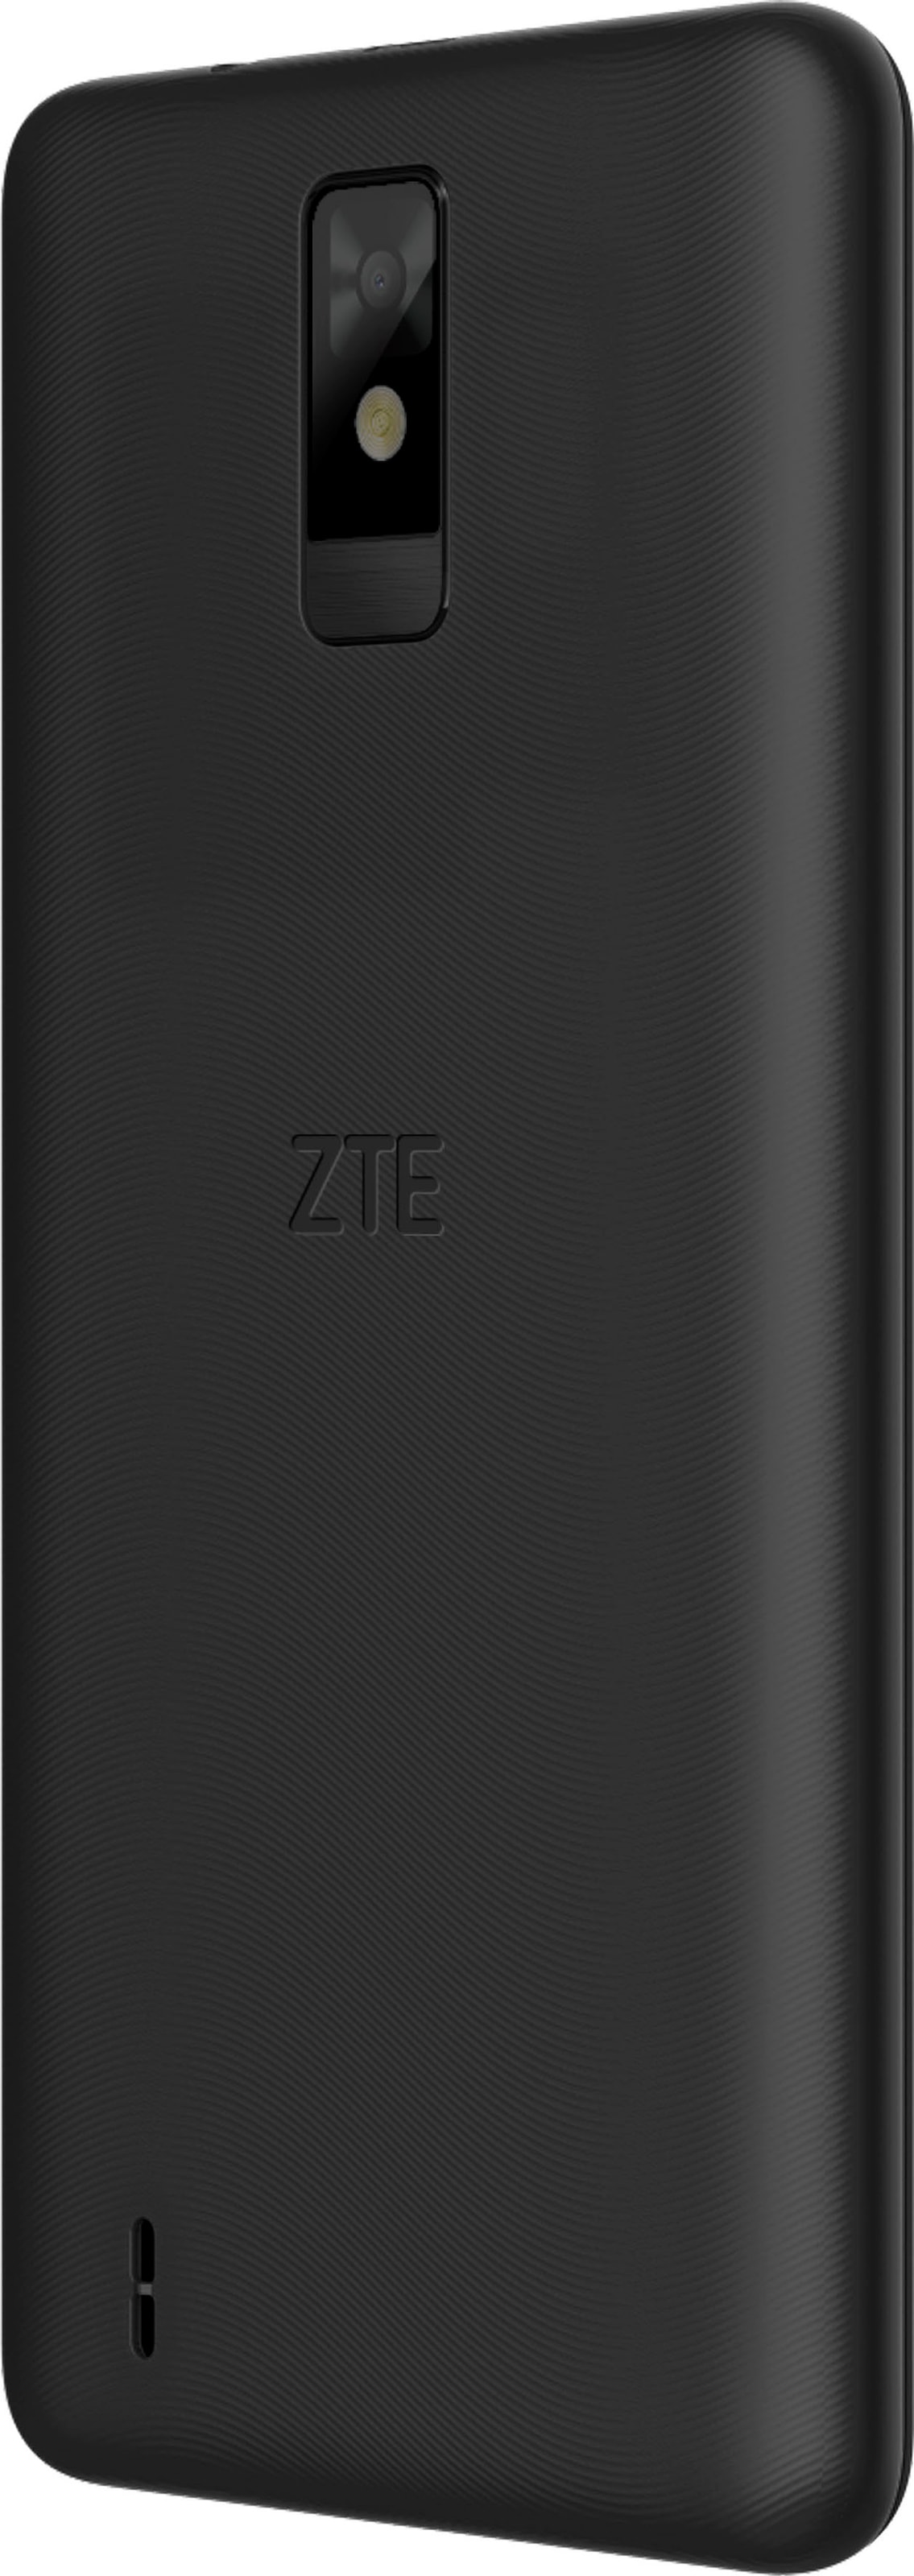 32 5 3 | Jahre UNIVERSAL XXL ZTE Smartphone 13,84 cm/5,45 Zoll, schwarz, »Blade Kamera Garantie Speicherplatz, ➥ MP A32«, GB